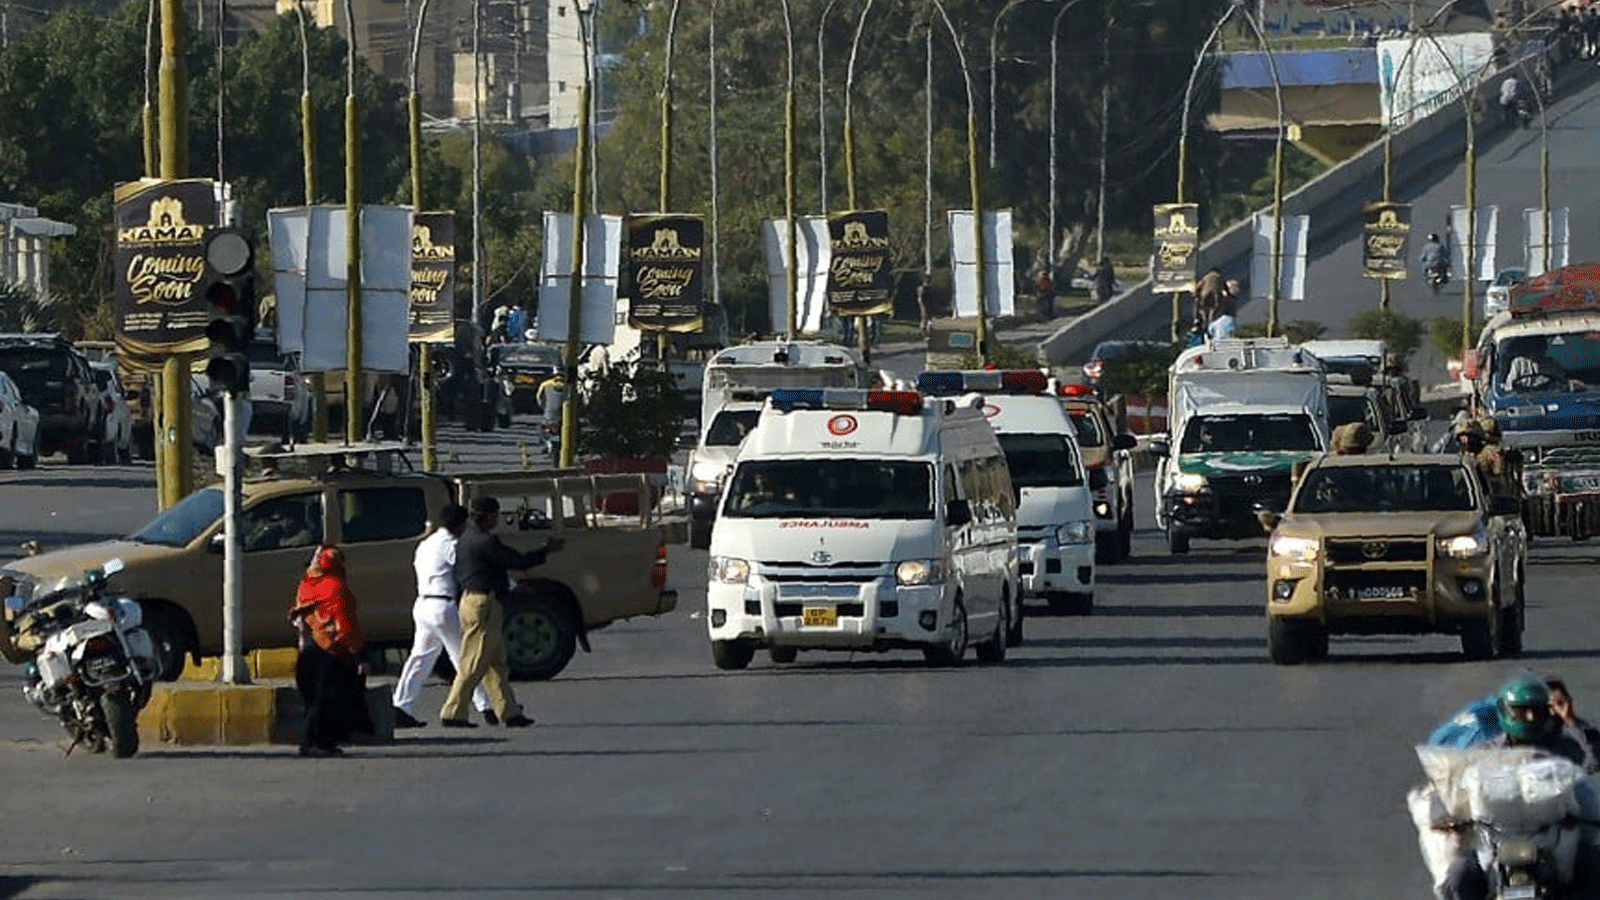 جنود من الجيش يرافقون سيارة إسعاف (على اليسار) تحمل نعش الحاكم العسكري الباكستاني السابق برويز مشرف بعد صلاة الجنازة أثناء نقل جثته إلى مقبرة عسكرية لدفنها في كراتشي